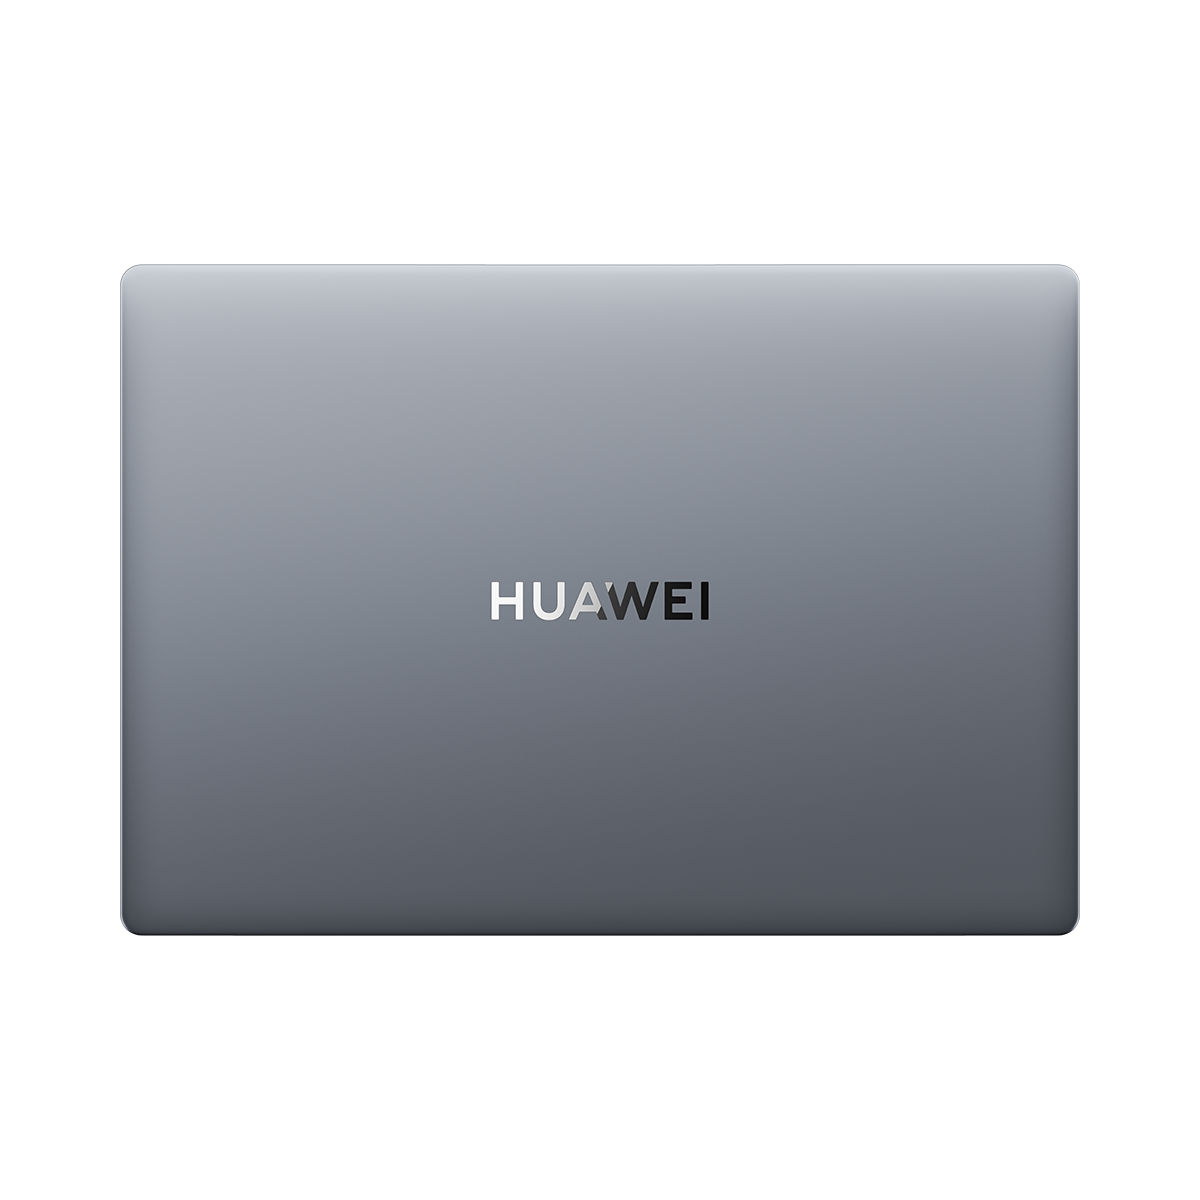 HUAWEI MateBook D16 ön satışa sunuldu - Sayfa 1